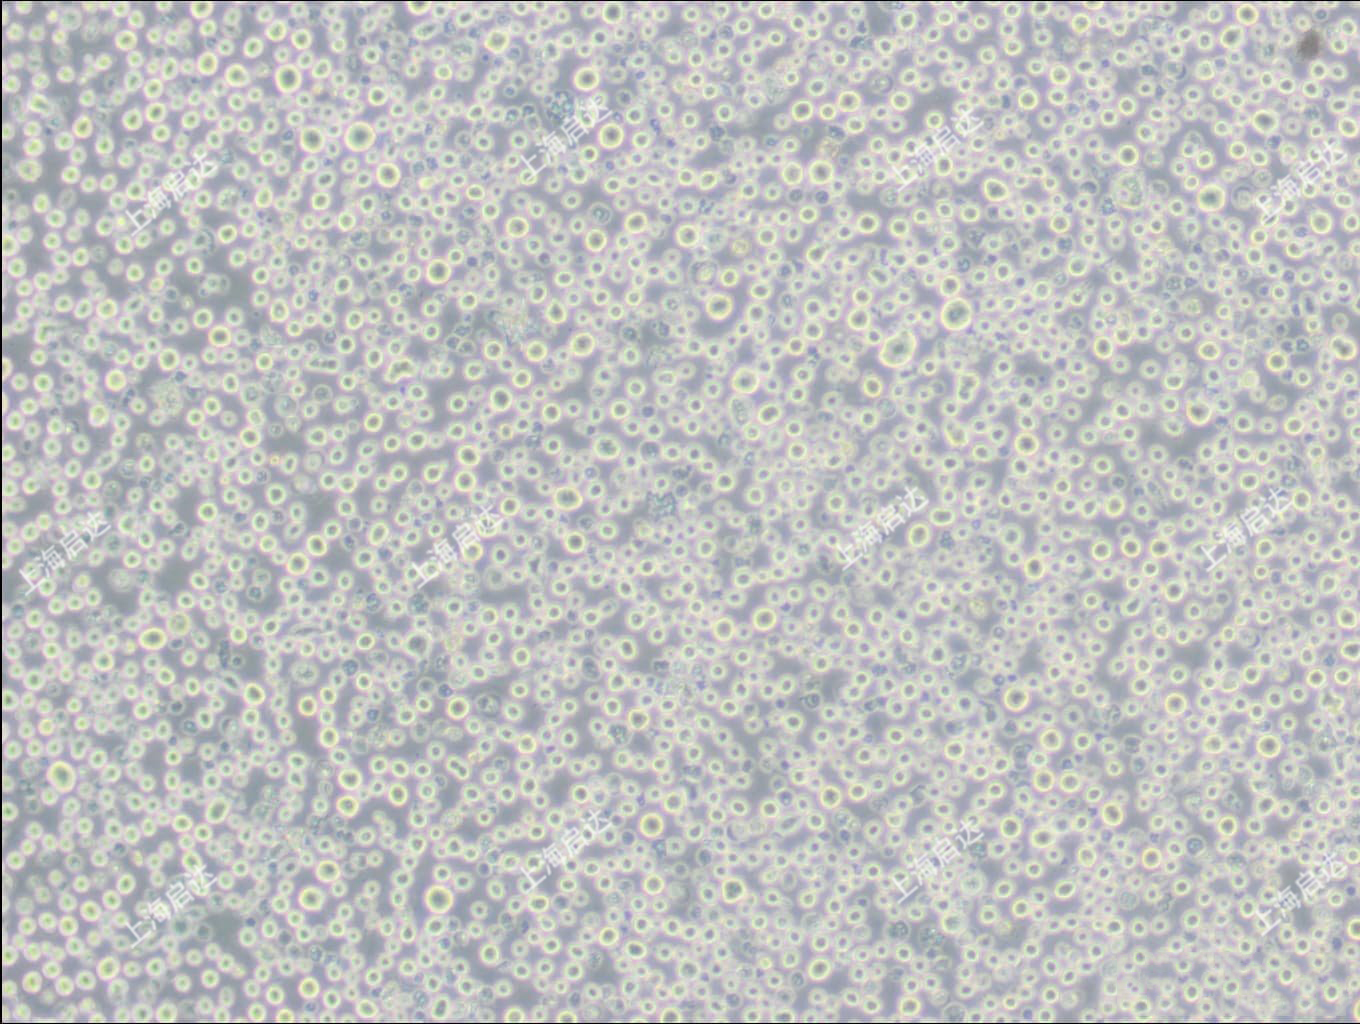 U266B1人骨髓瘤细胞